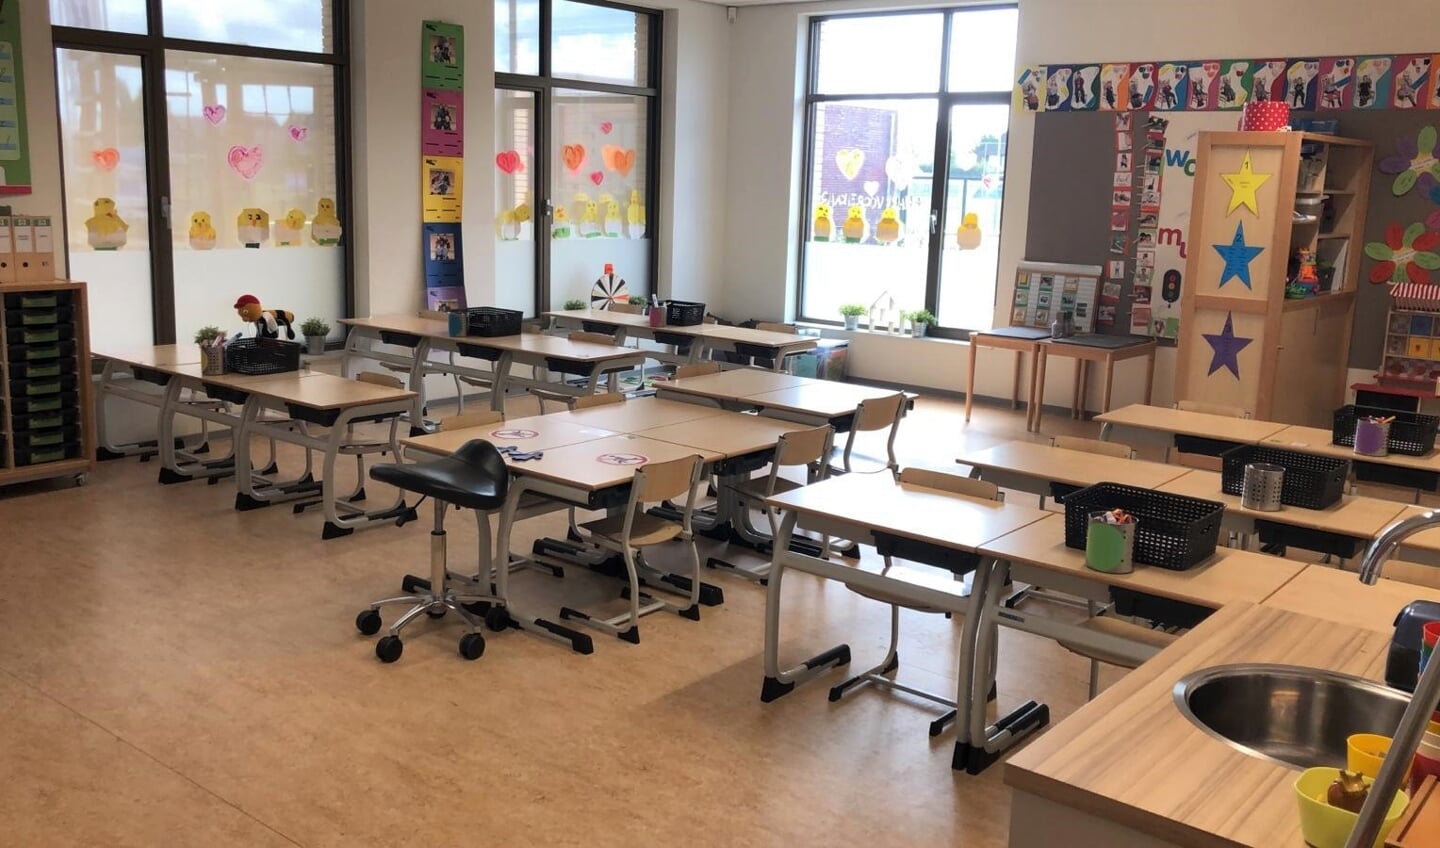 Groep 3 van de Moerkapelse Keijzerschool: tussen de gemiddeld twaalf leerlingen staat steeds een tafel. De leerkracht loopt niet door de klas.